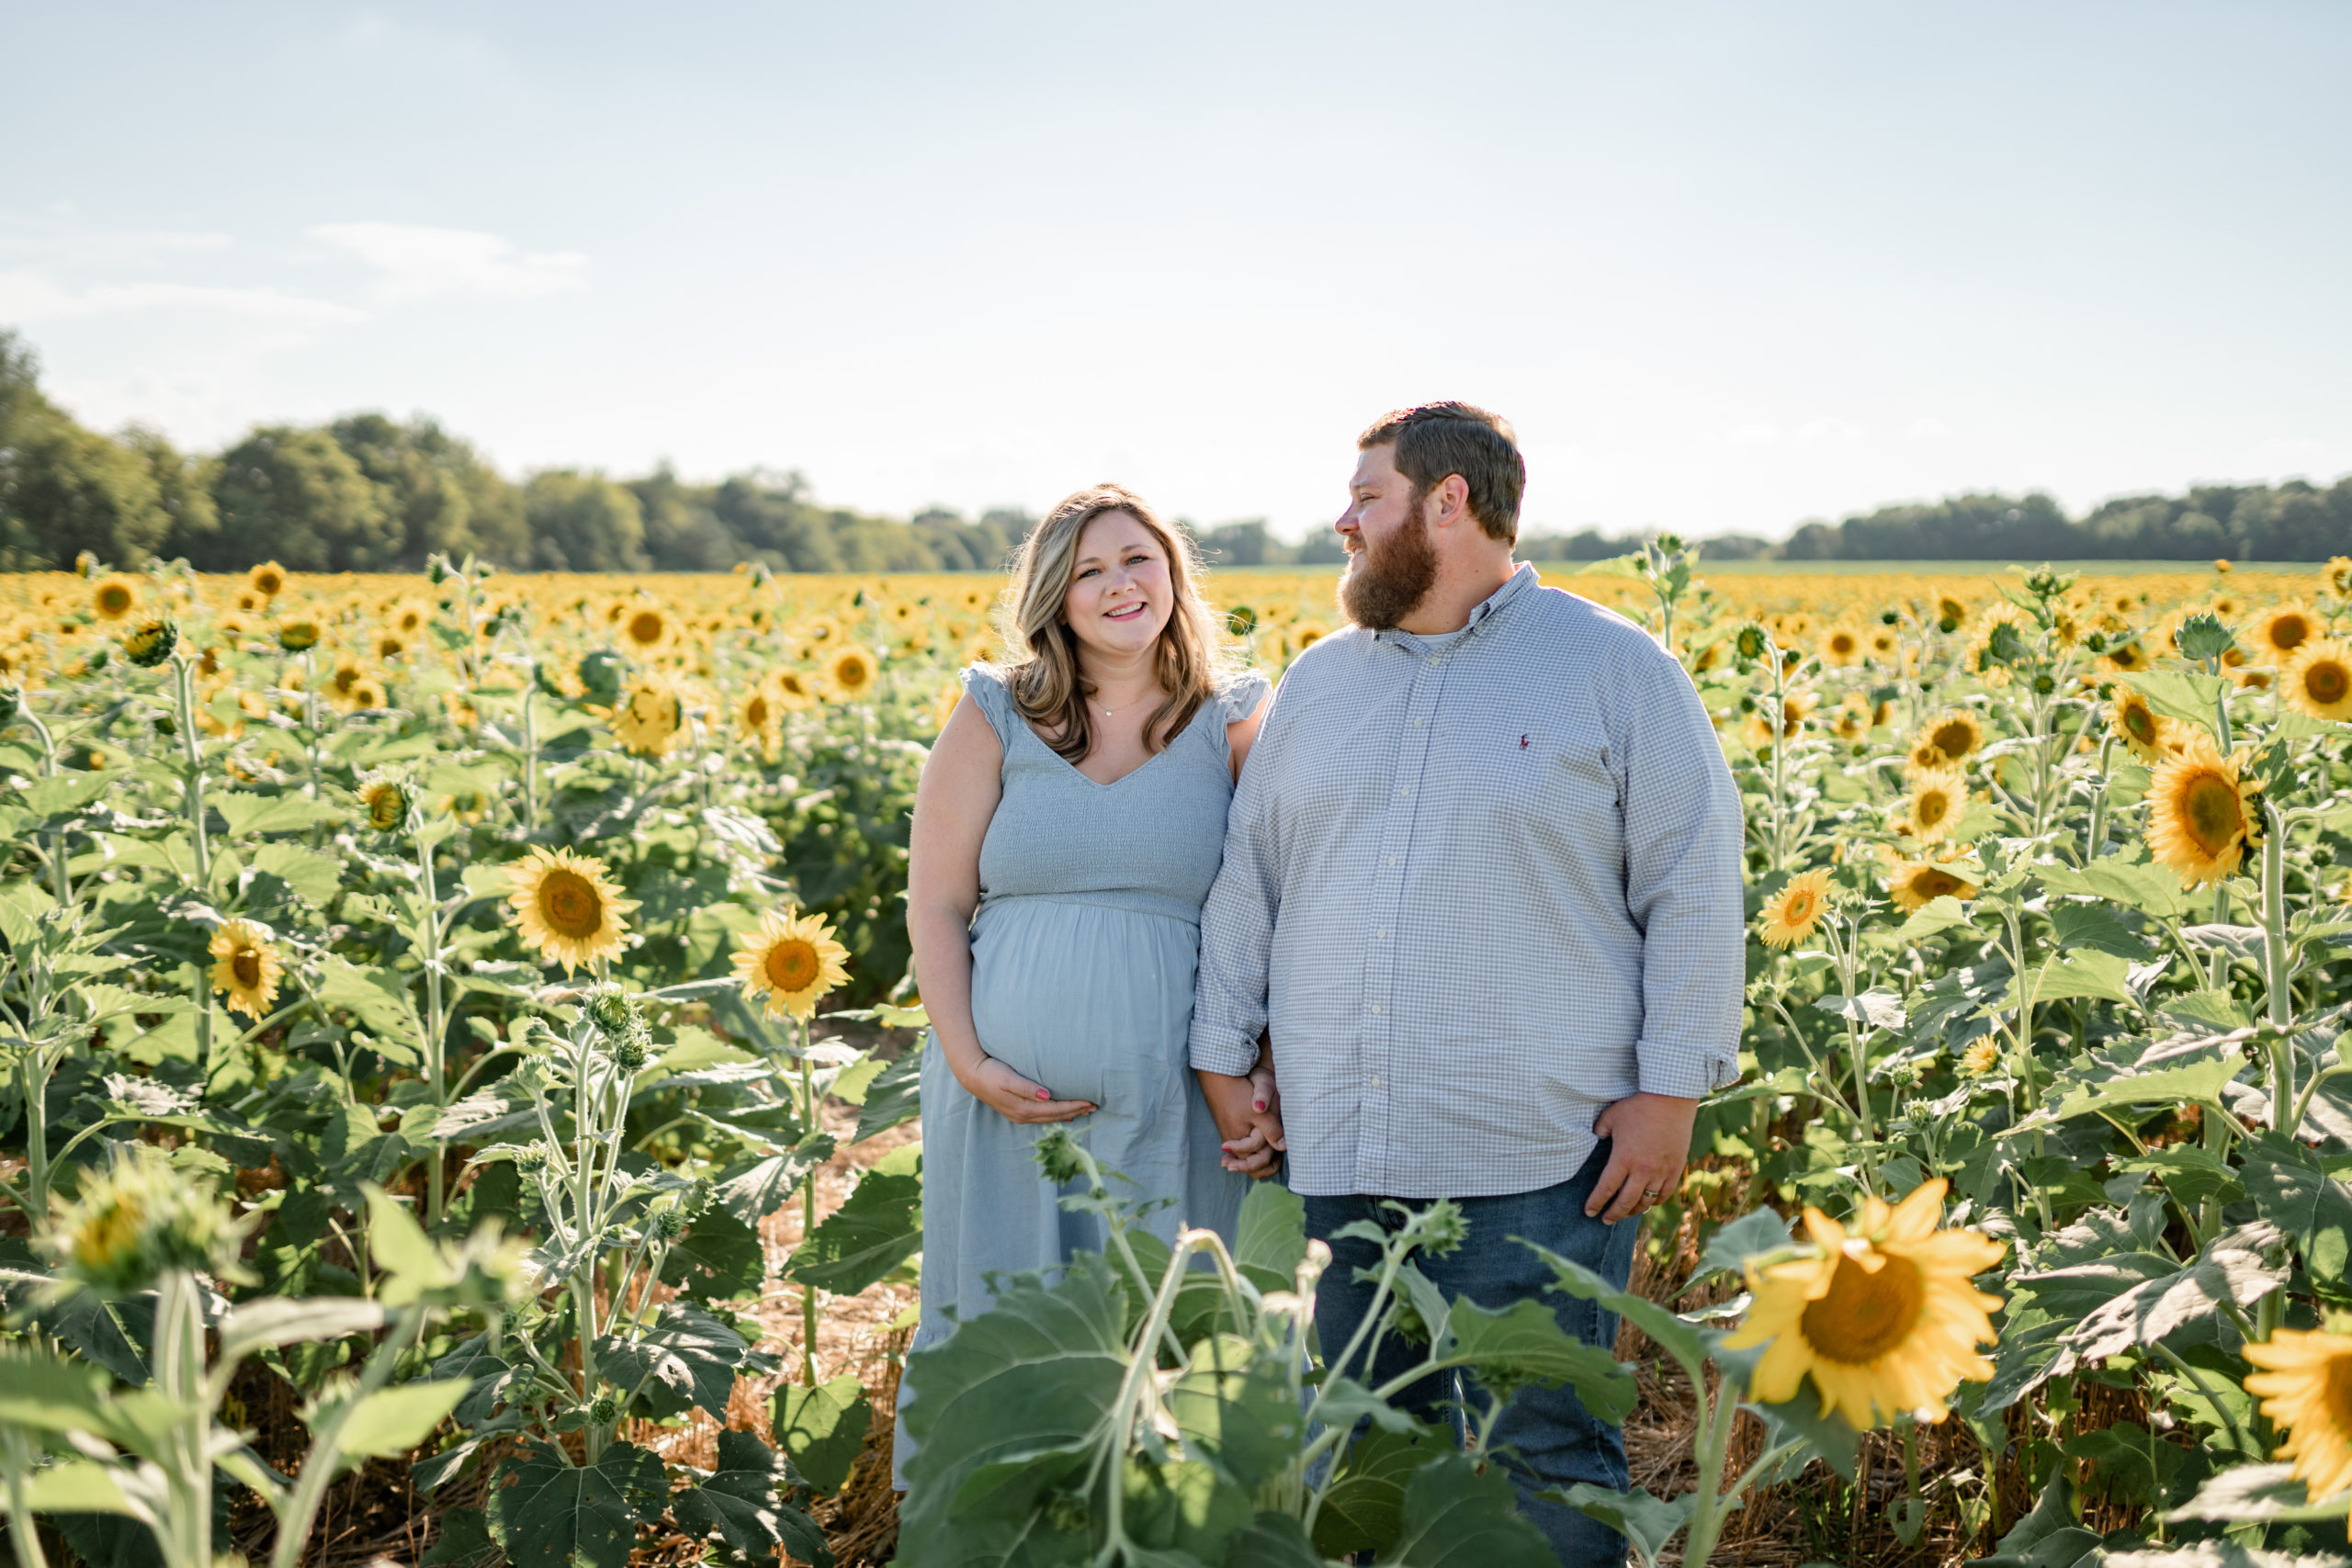 huntsville photographer maternity session sunflower filed